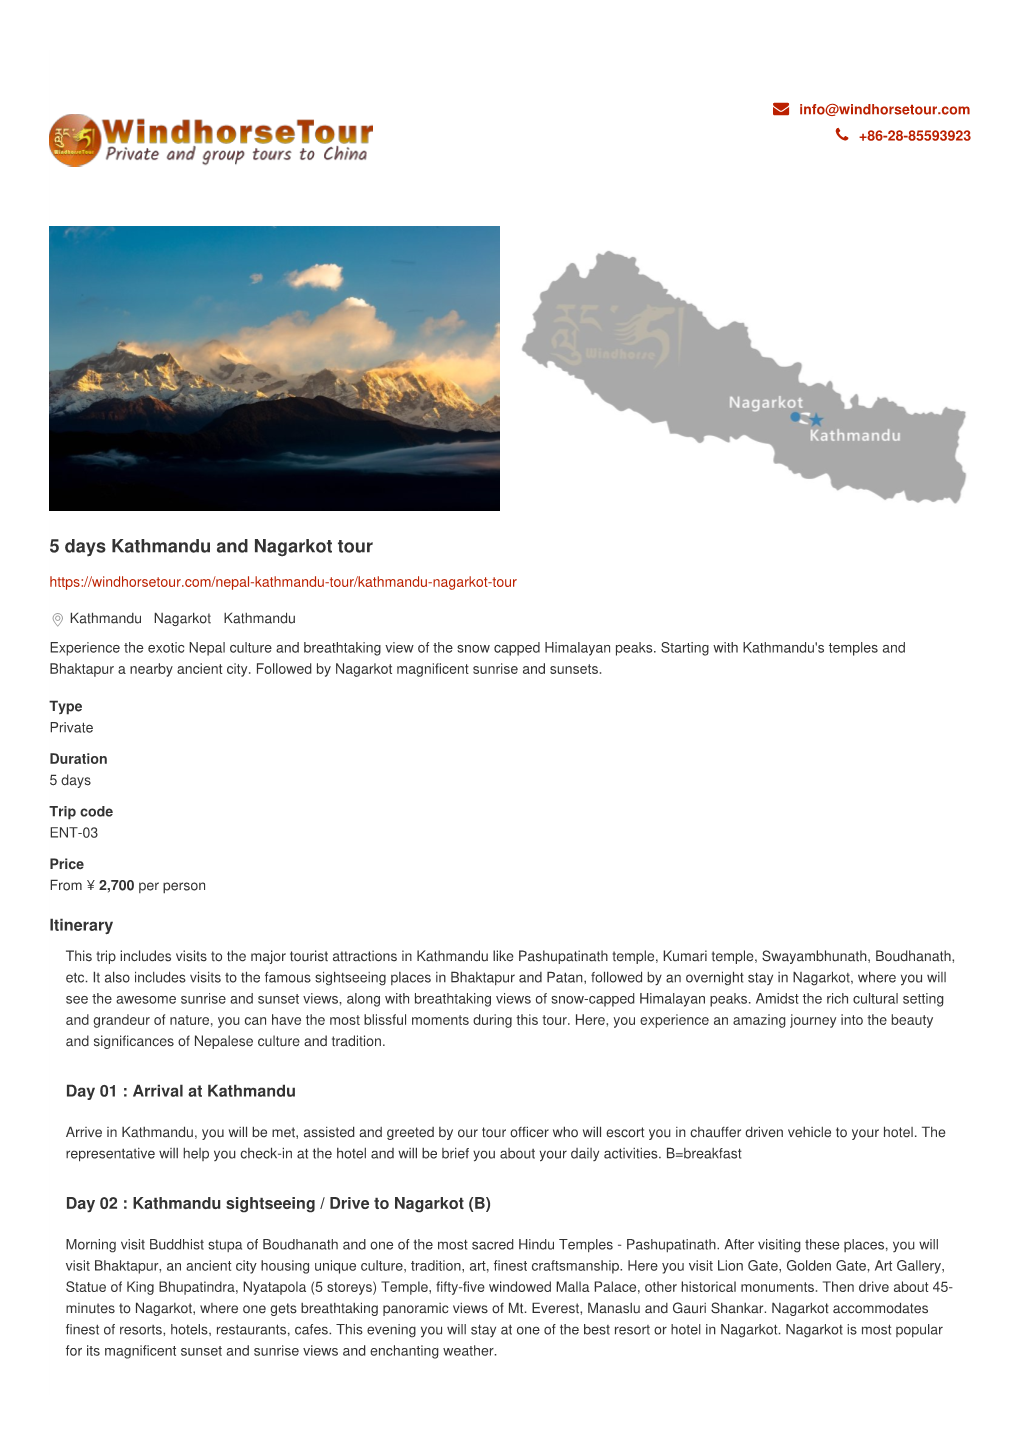 5 Days Kathmandu and Nagarkot Tour